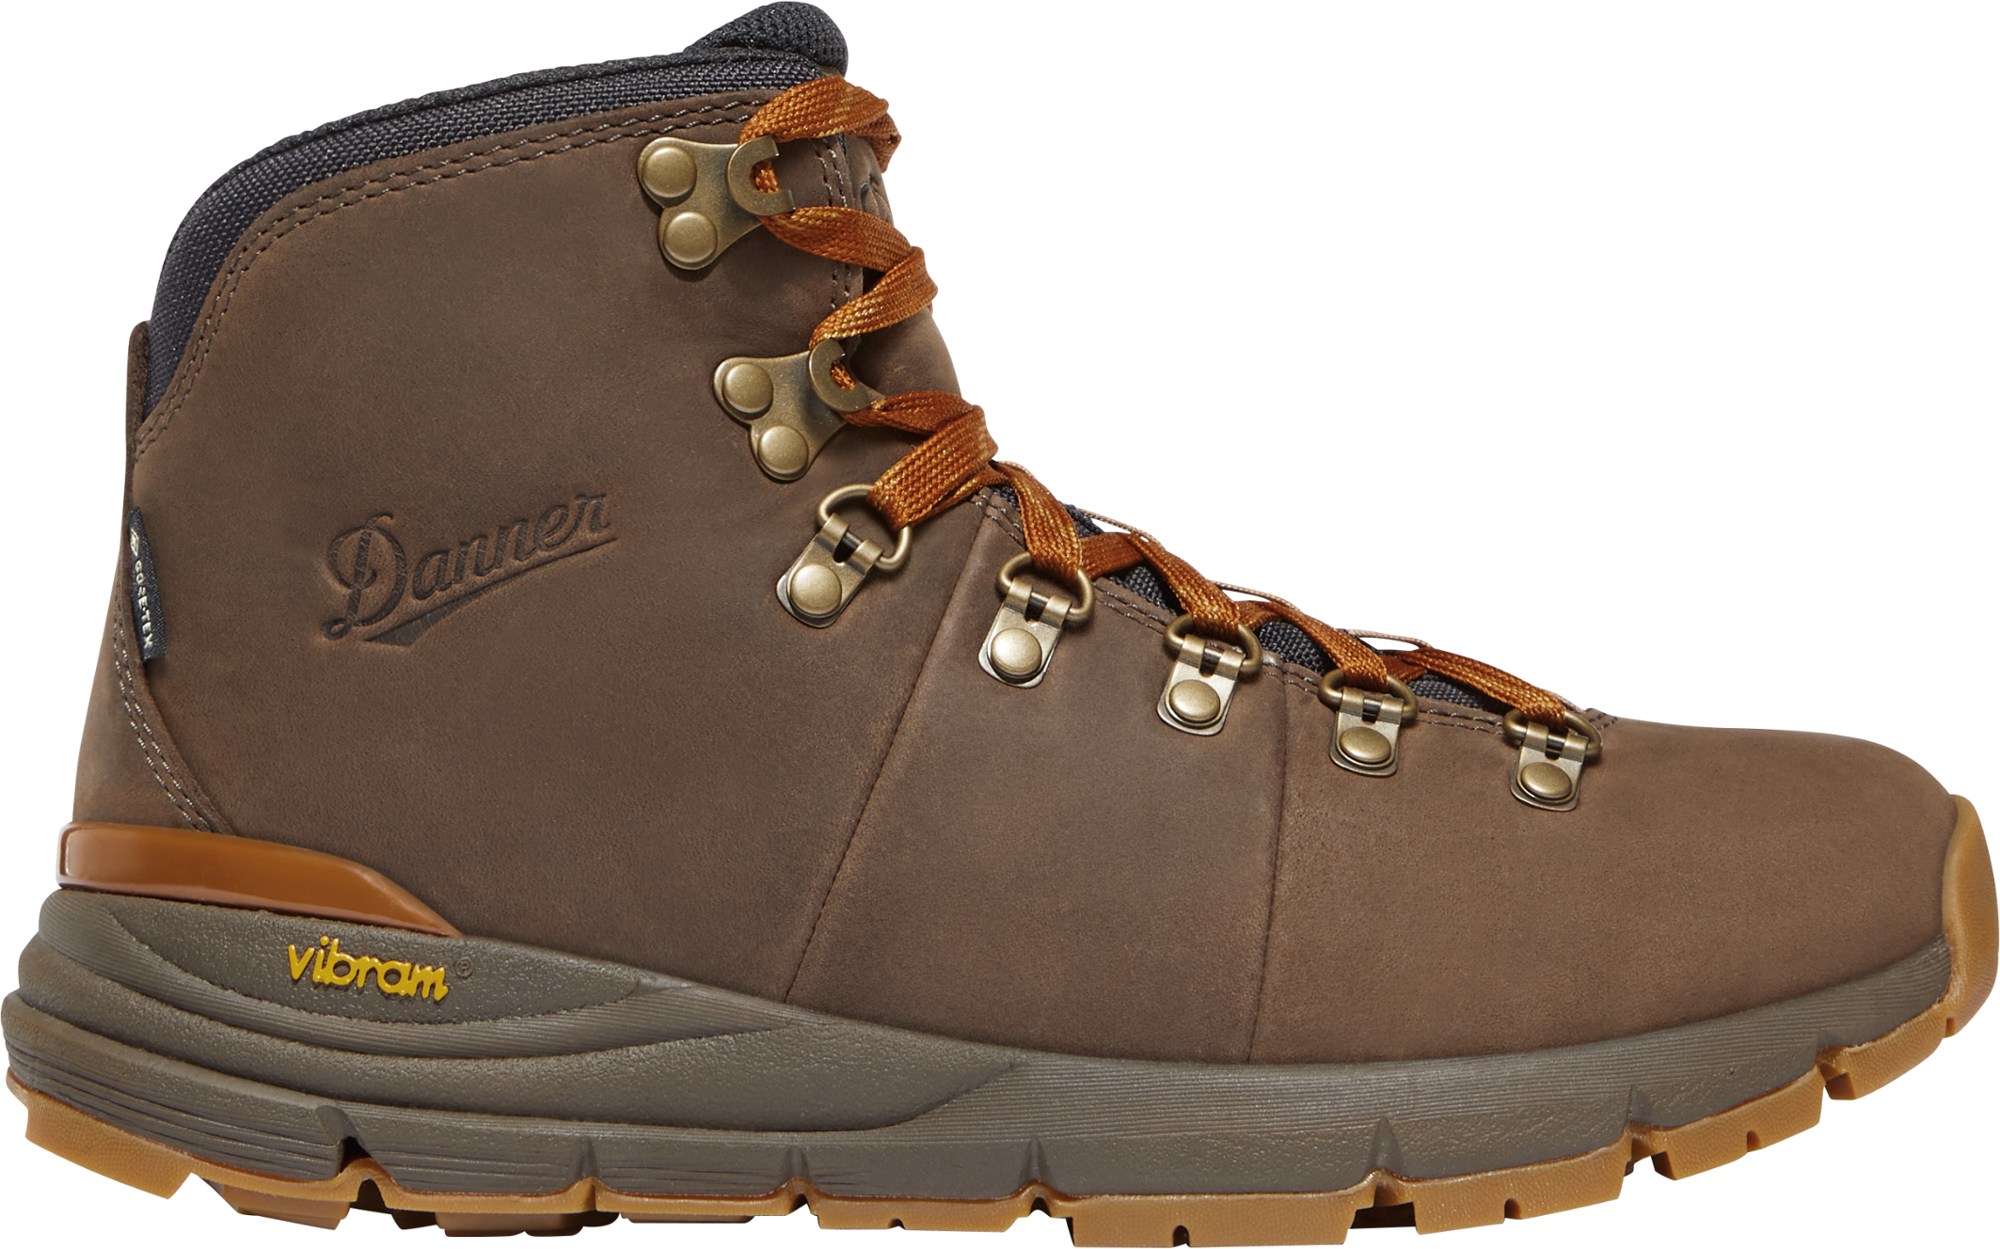 Походные ботинки Mountain 600 Leaf GORE-TEX — женские Danner, коричневый